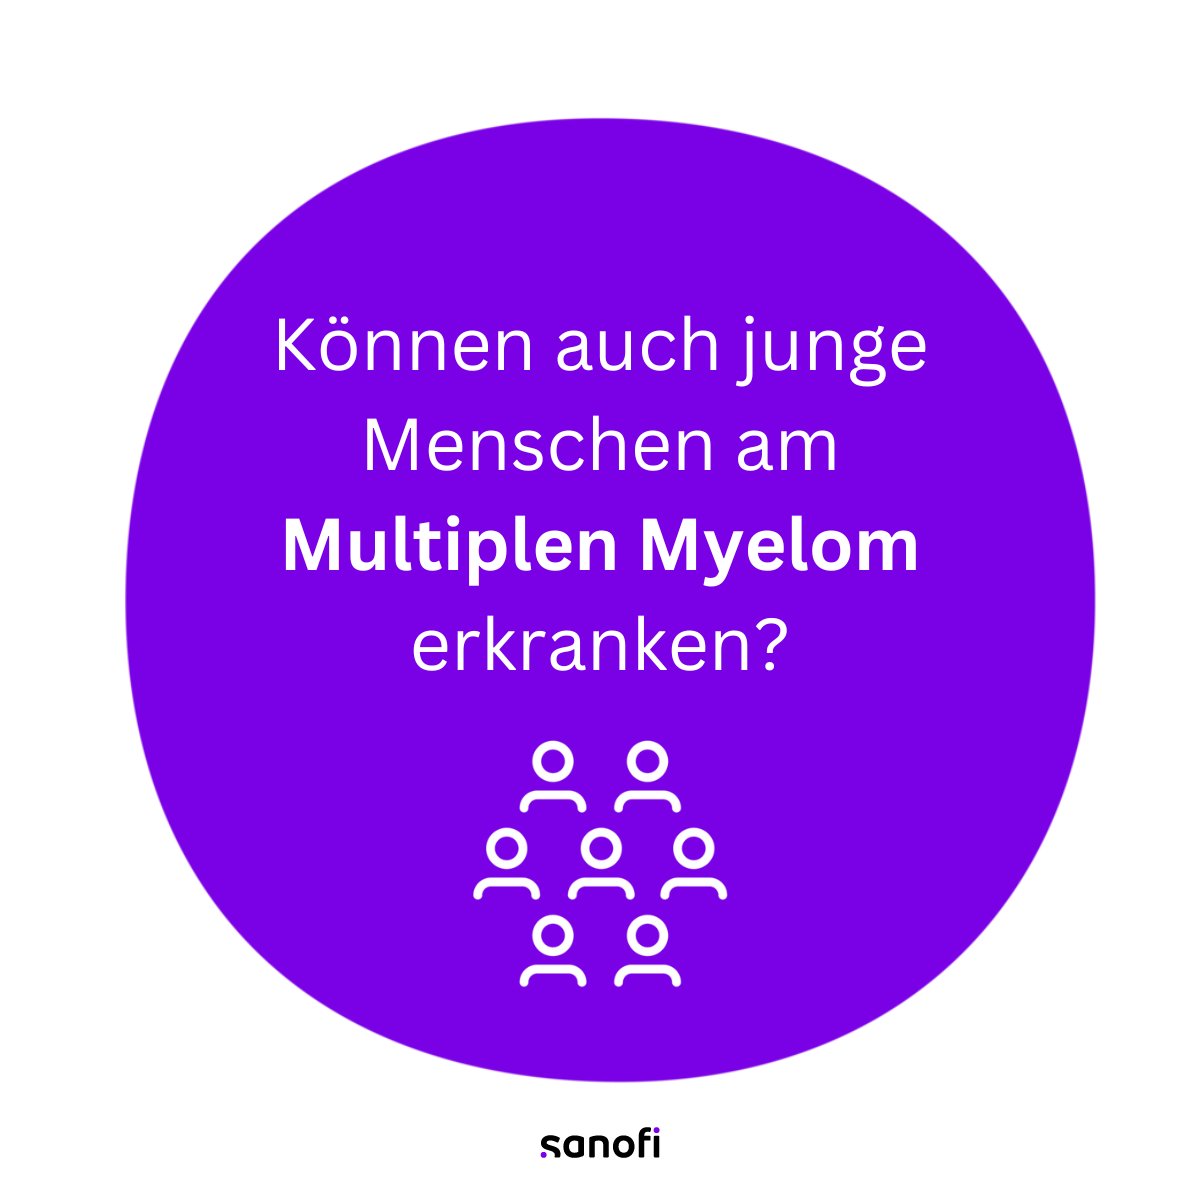 Ja, durchaus. Das Durchschnittsalter bei der Diagnose eines Multiplen Myeloms liegt jedoch bei rund 75 Jahren.
#MYELOMACTIONMONTH #MultiplesMyelom #WeNeverSettle #CancerAwareness